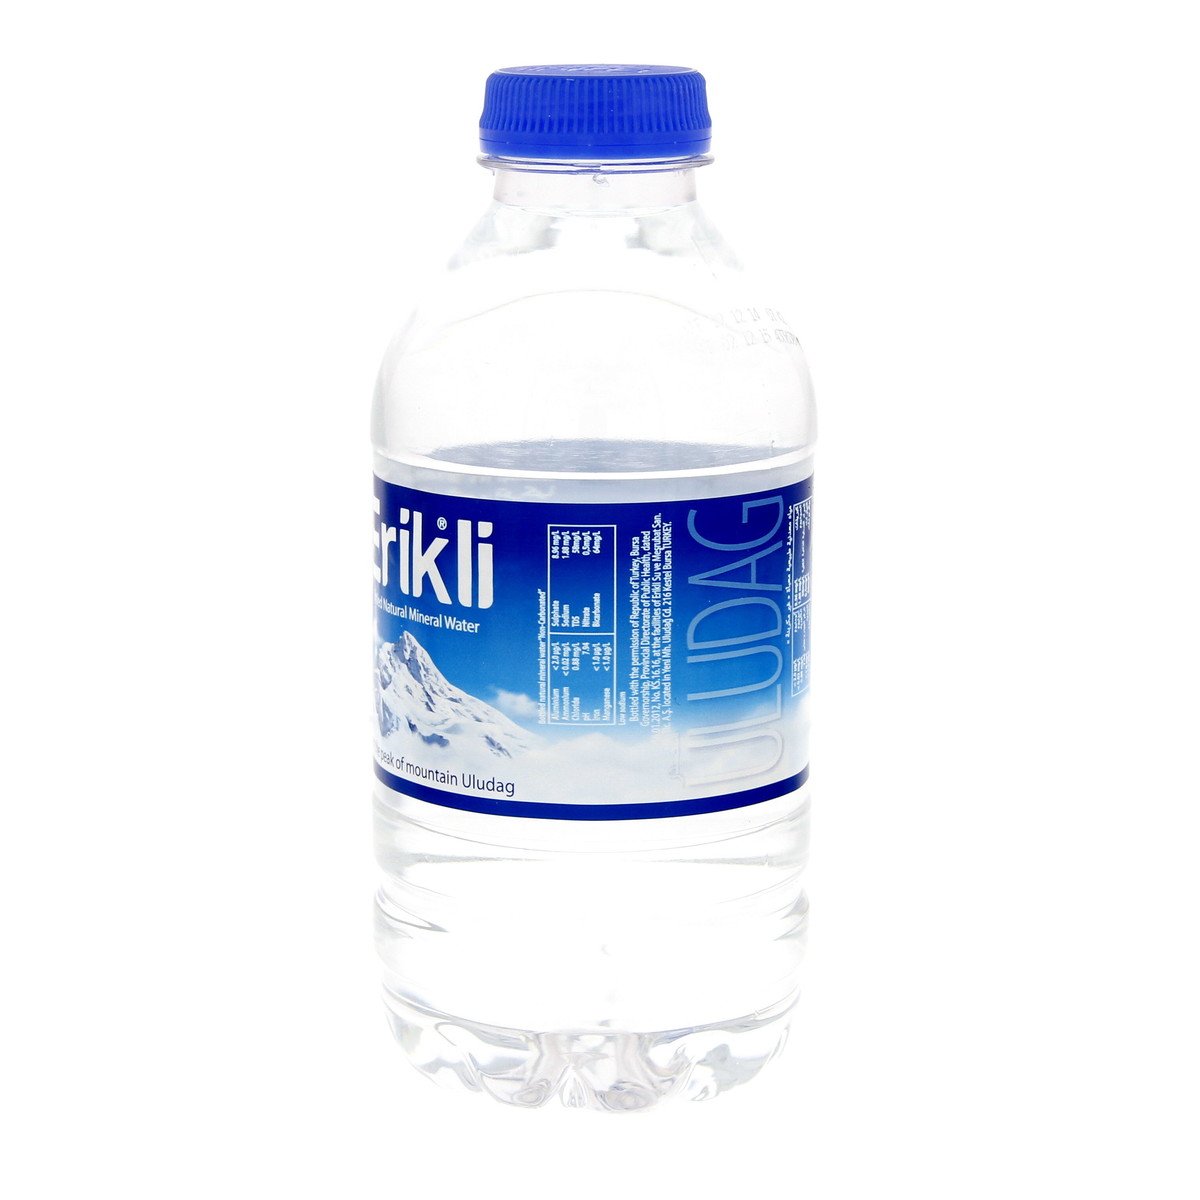 Erikli Bottled Natural Water 12 x 330 ml